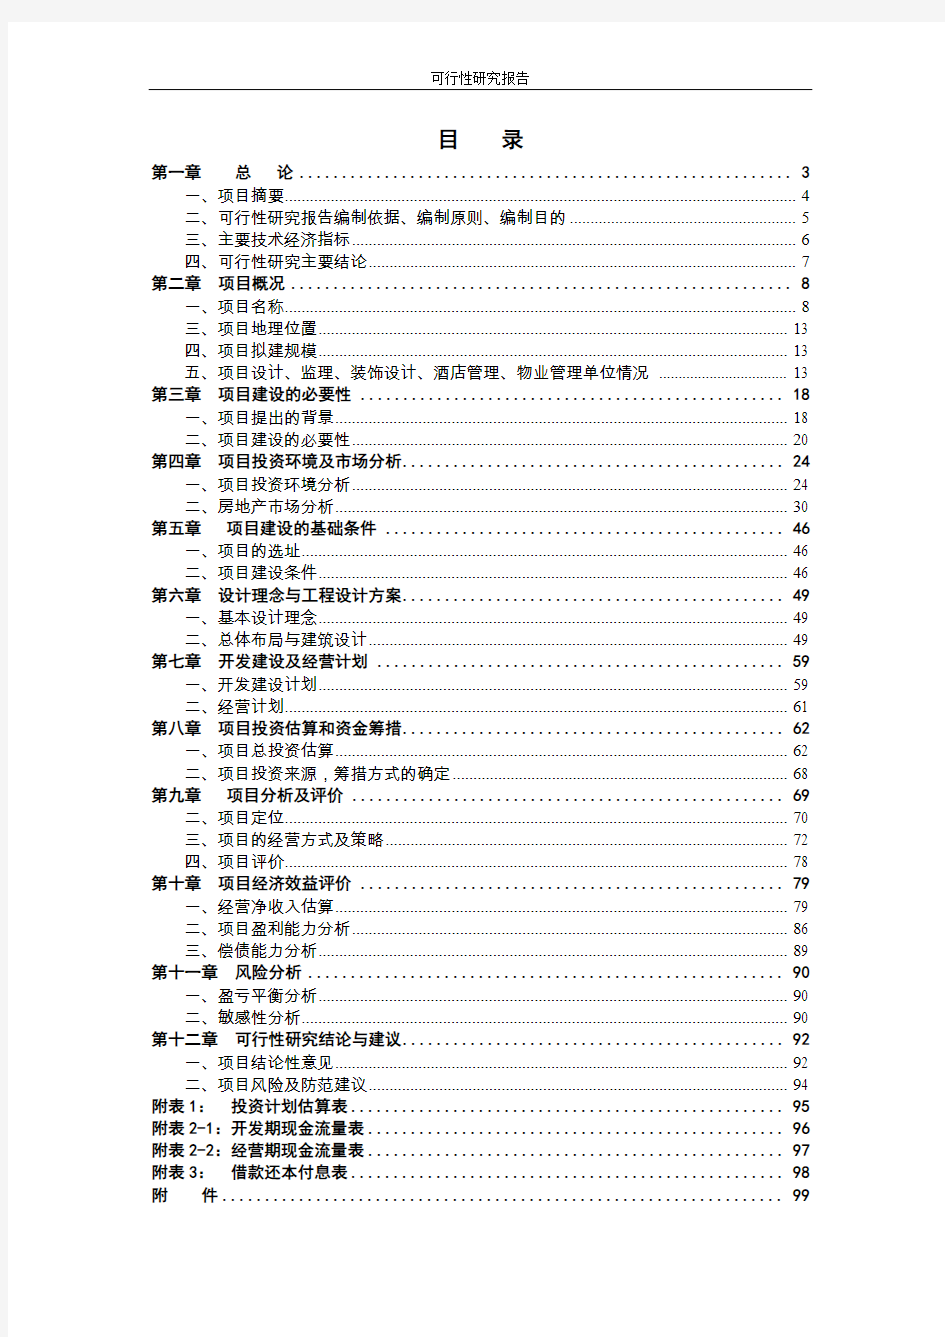 郑州市某CBD商务中心项目可行性研究报告